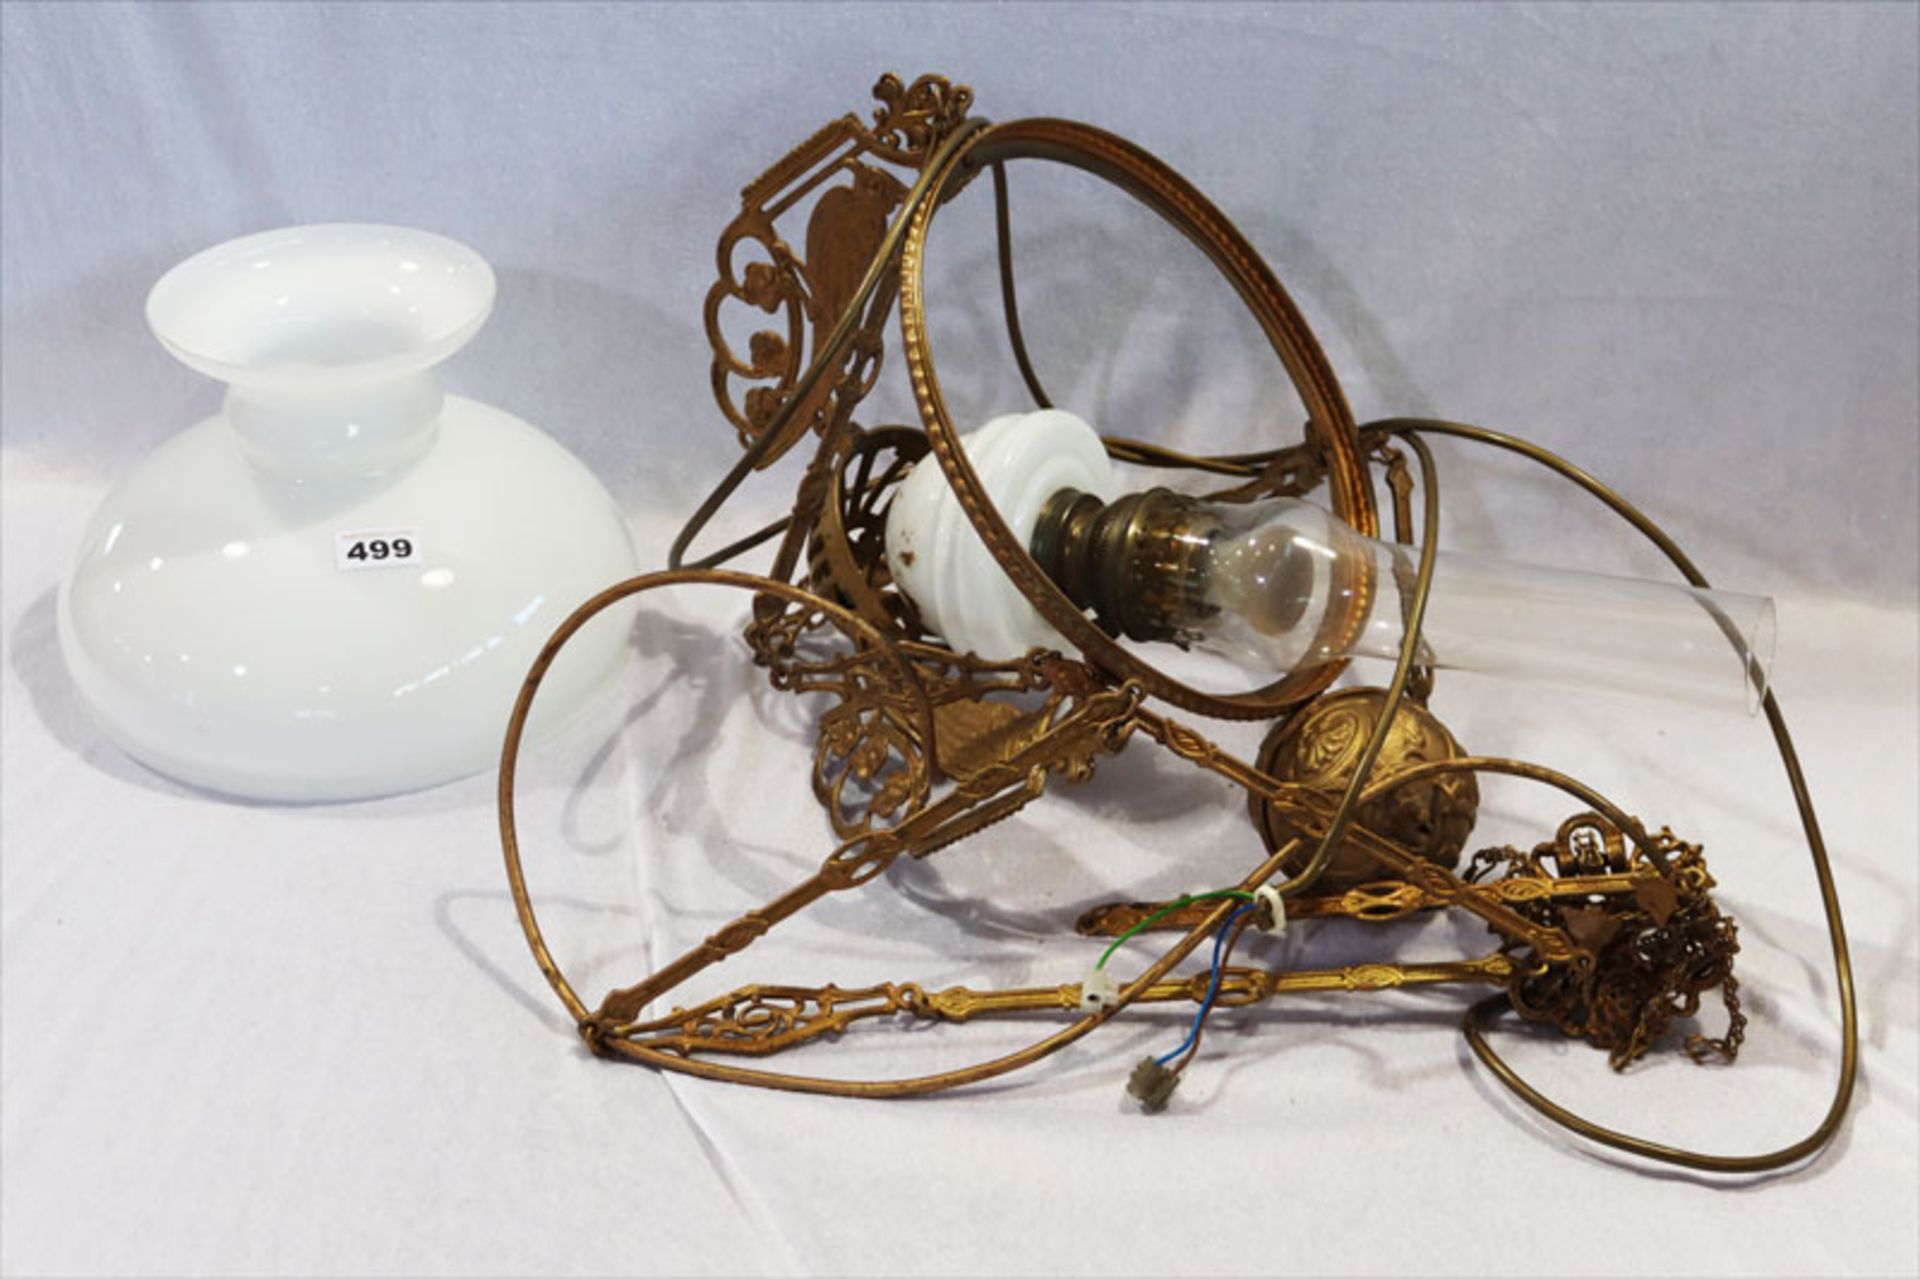 Metall Hängelampe mit Vogeldekor und Milchglasschirm, Petroleumlampe elektrifiziert, Funktion